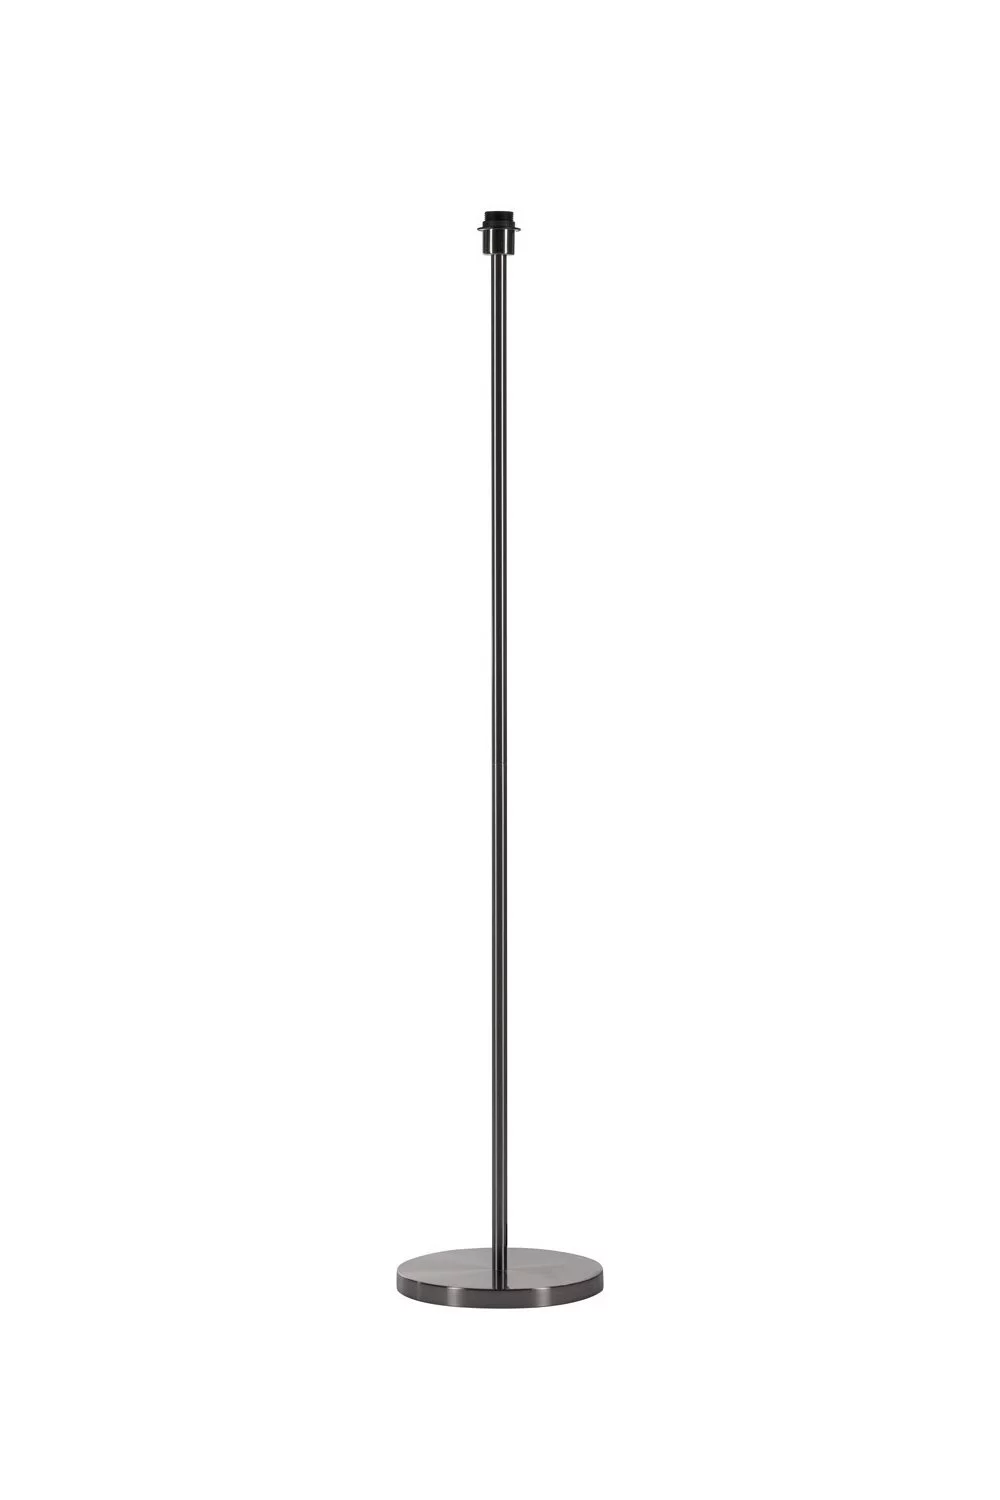   
                        
                        Торшер SLV (Германия) 24485    
                         в стиле Хай-тек.  
                        Тип источника света: светодиодная лампа, сменная.                                                                                                  фото 1